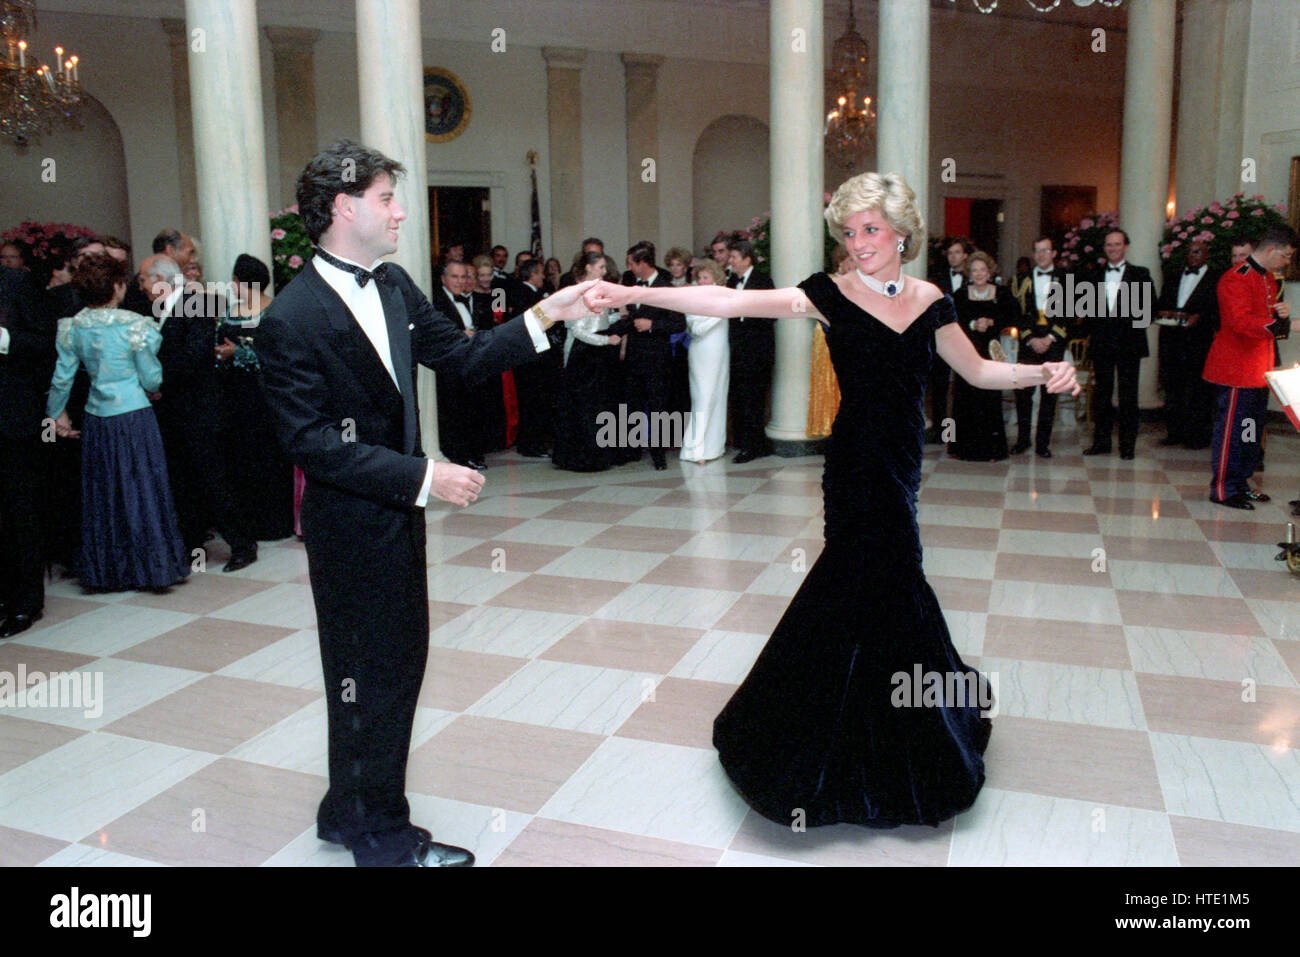 La princesse Diana danse avec John Travolta dans le Hall de la Maison Blanche à Washington, D.C lors d'un dîner de prince Charles et la Princesse Diana du Royaume-Uni le 9 novembre 1985 Obligatoire Banque D'Images